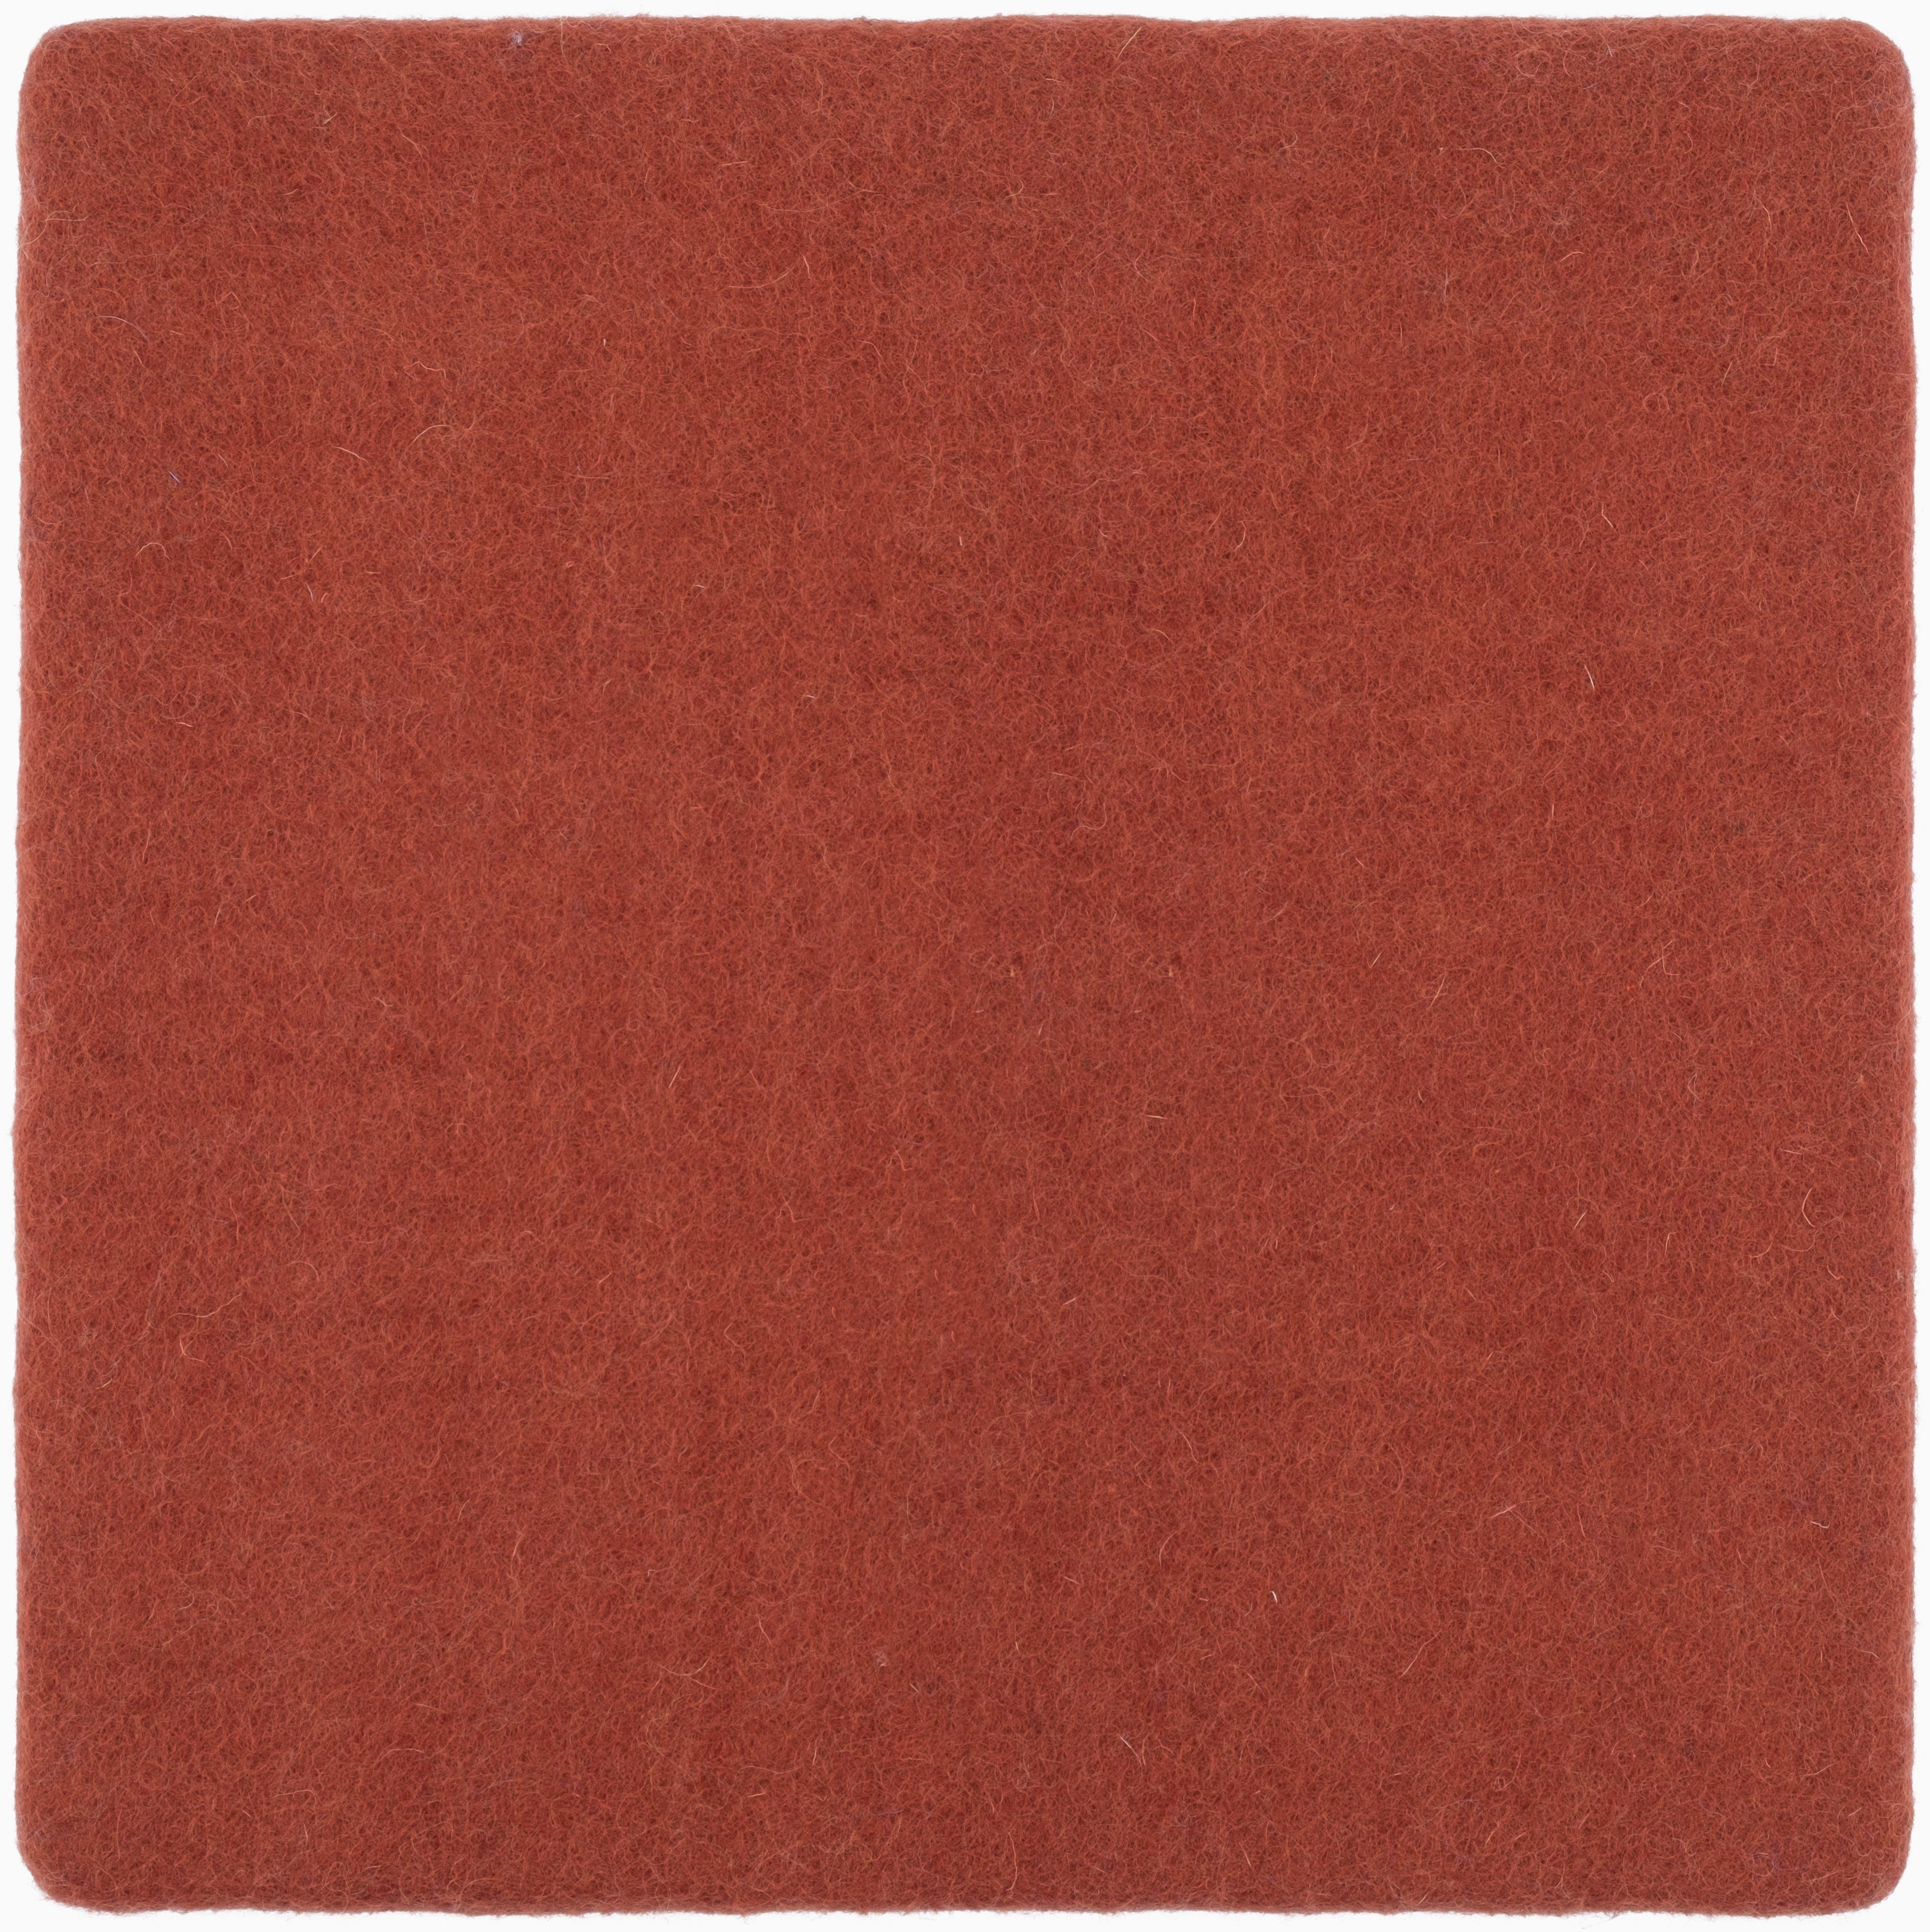 myfelt Stuhlkissen Filz Sitzauflage quadratisch - 36 x 36 cm, 100% reiner Schurwolle, quadratisch, schmutzabweisend Lora